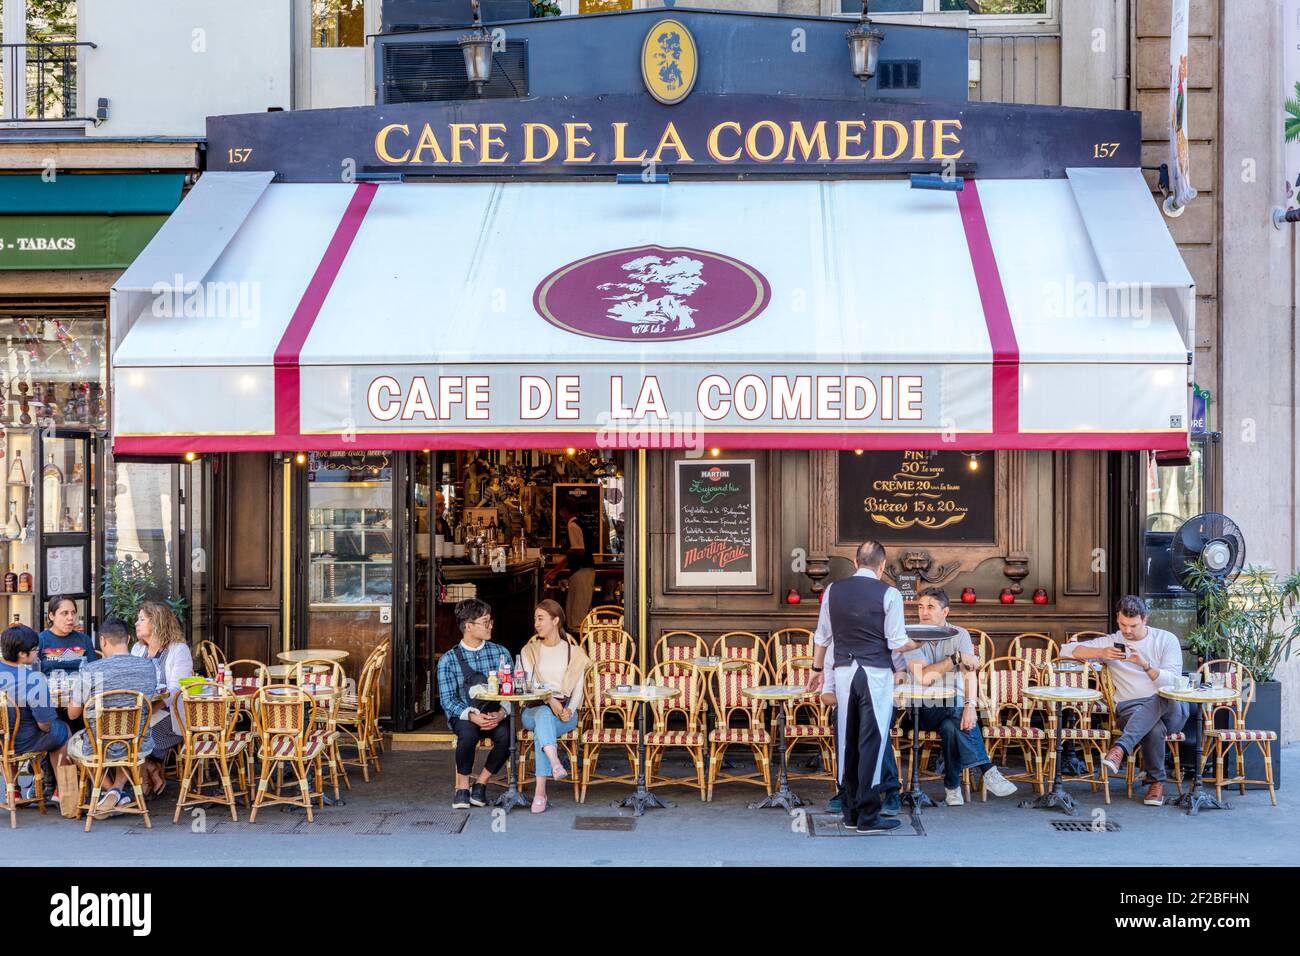 Cafe de la Comedie near Place Colette, 1st Arrondissement, Paris, France Stock Photo